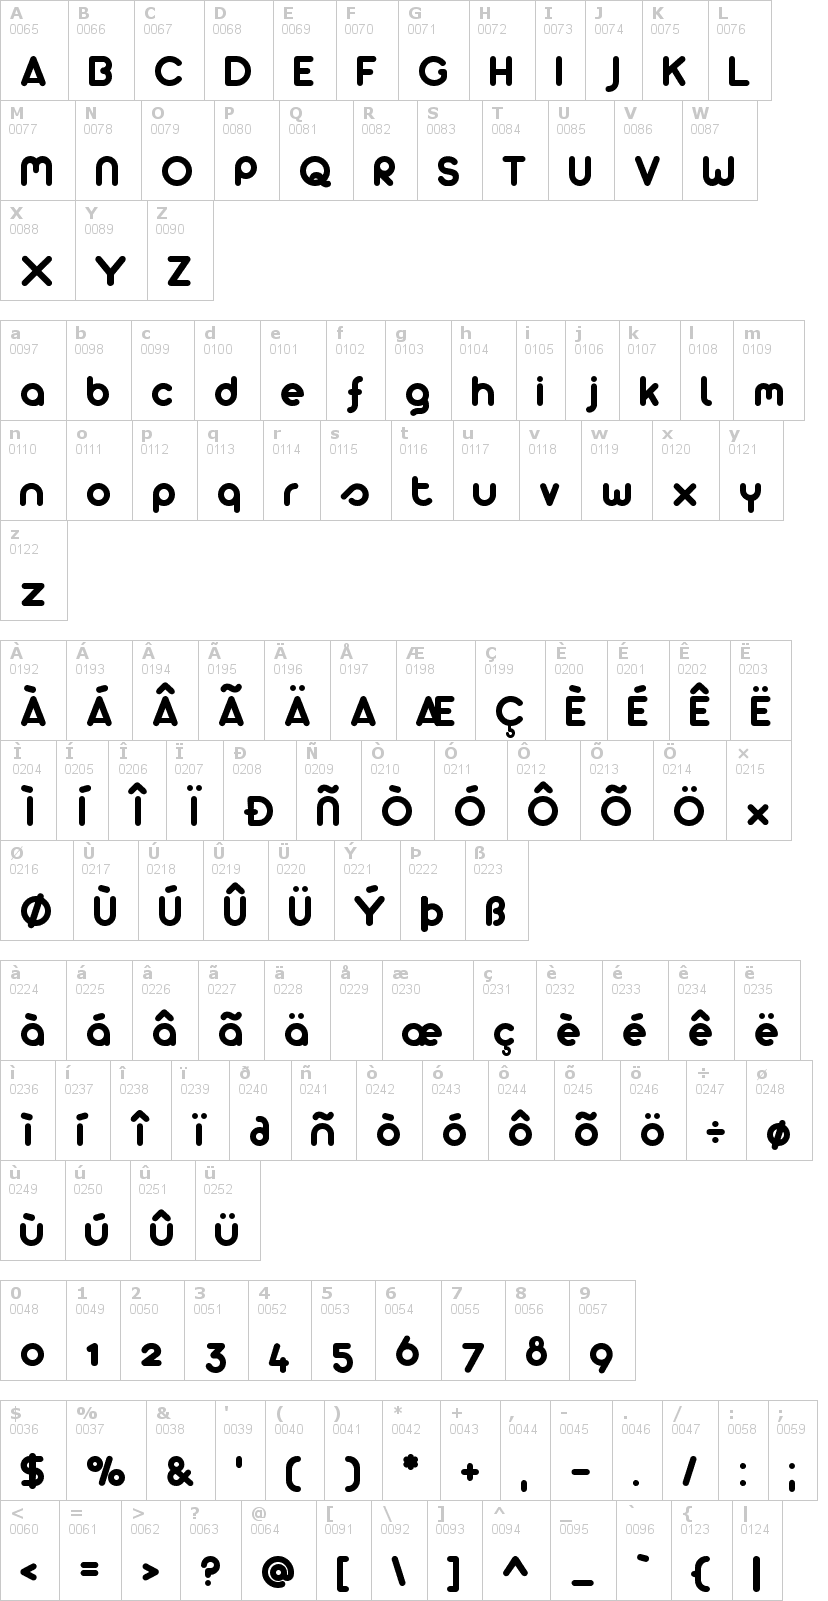 Lettere dell'alfabeto del font arista-2-0 con le quali è possibile realizzare adesivi prespaziati